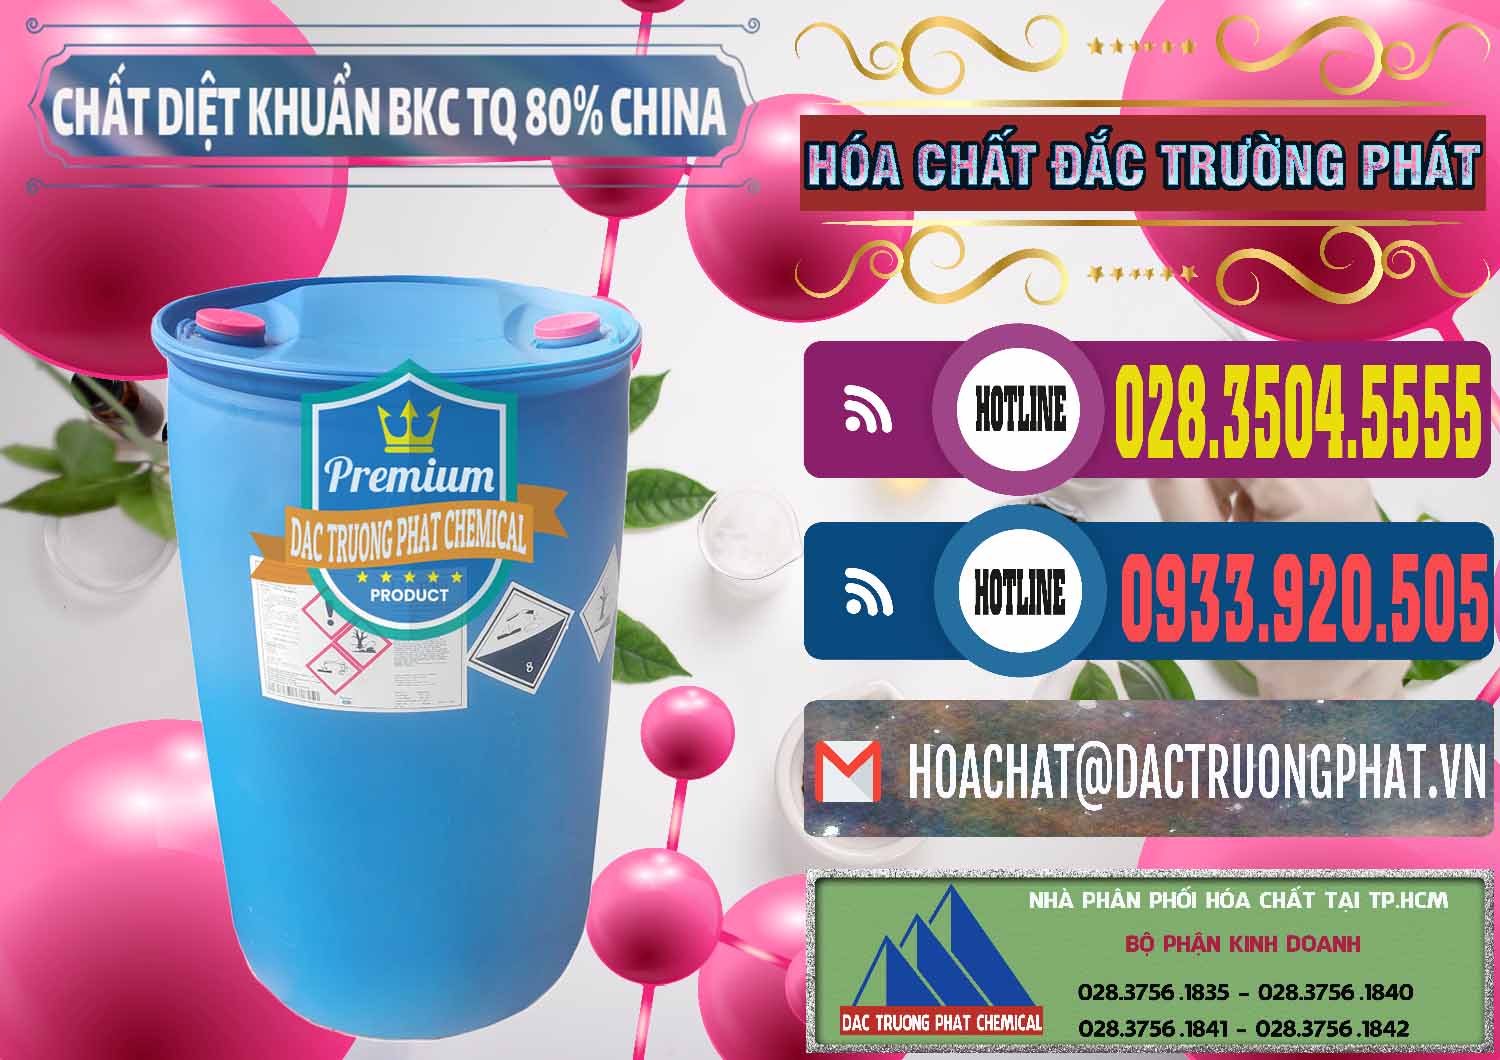 Cty bán - cung cấp BKC - Benzalkonium Chloride 80% Trung Quốc China - 0310 - Cty bán & phân phối hóa chất tại TP.HCM - muabanhoachat.com.vn